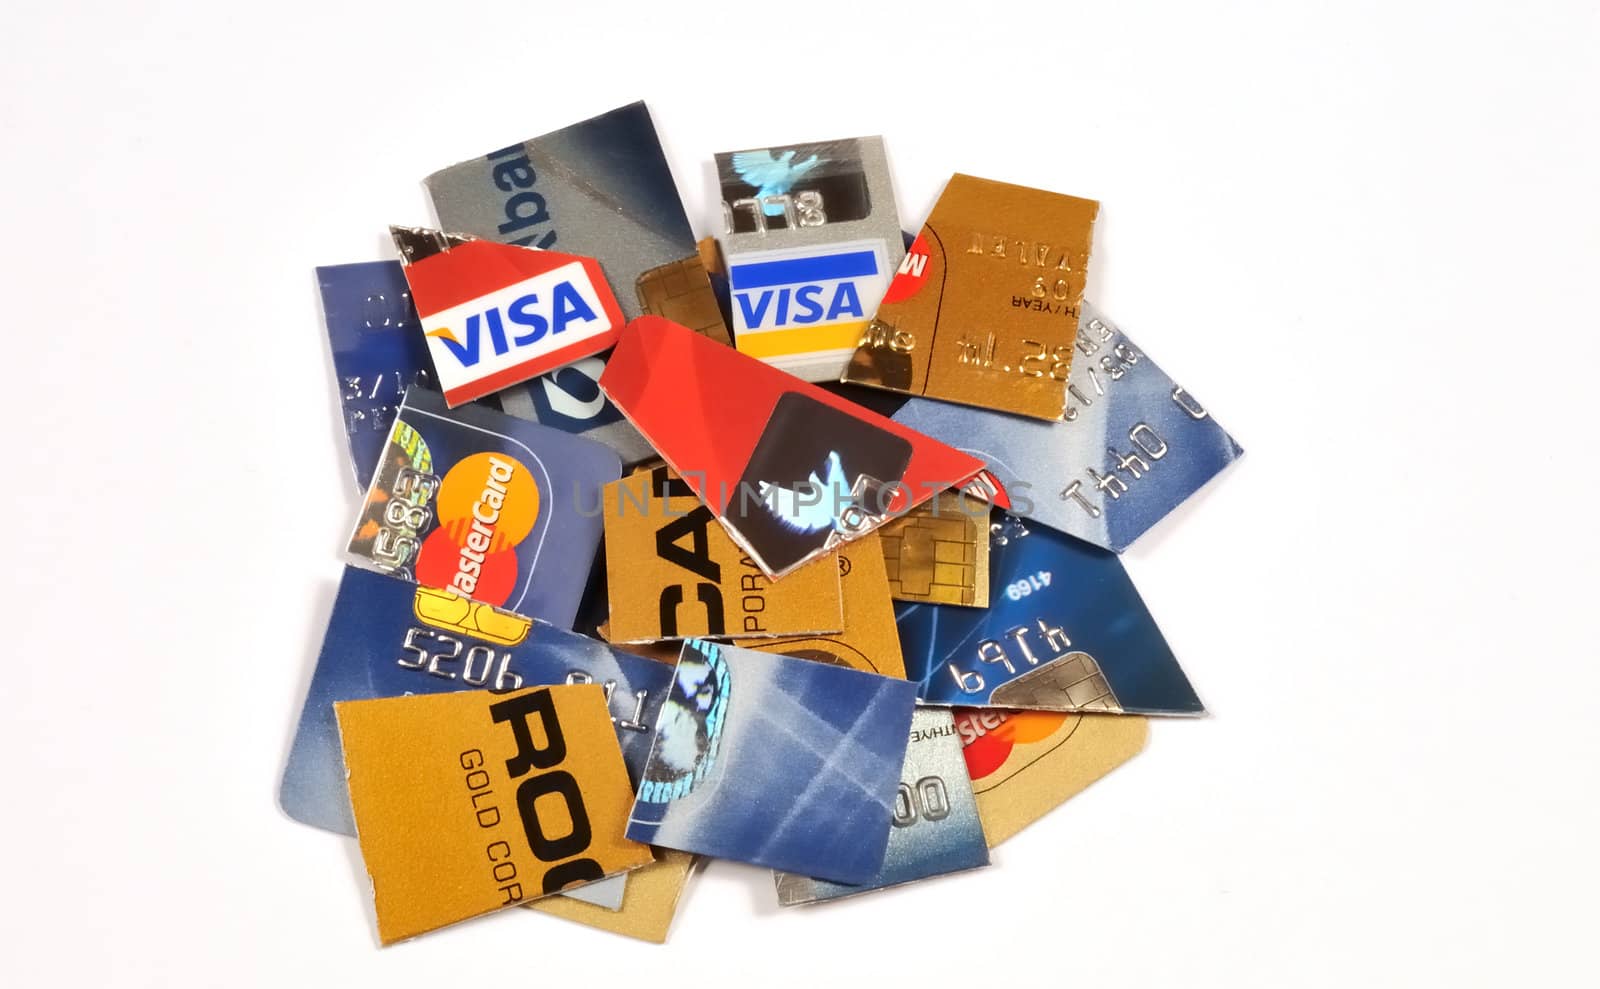 Creditcards in pieces by Espevalen